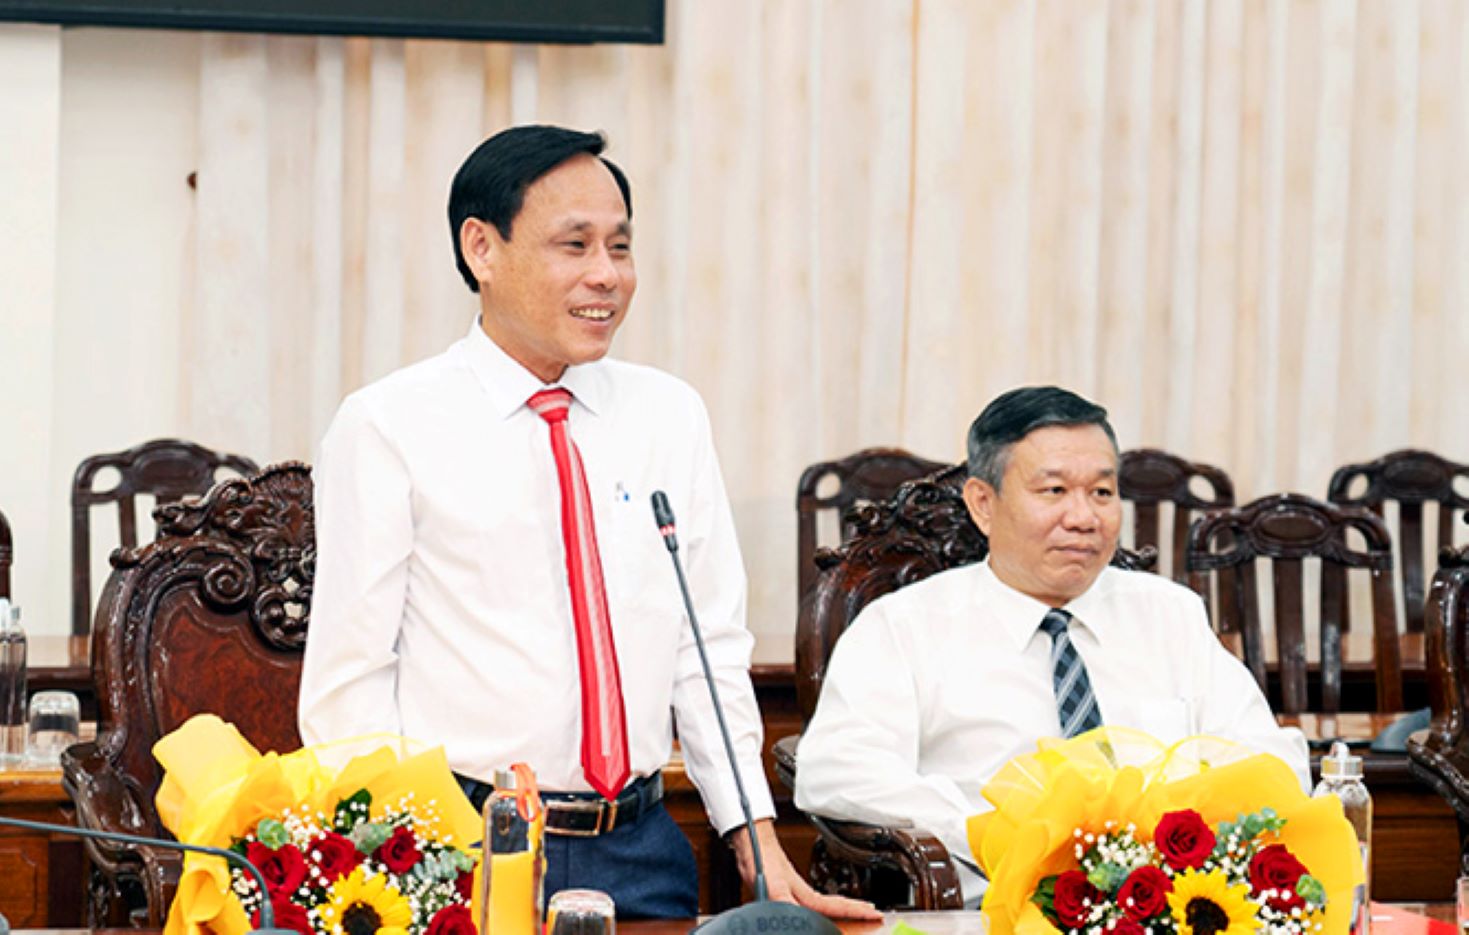 Ông Trần Hòa Hợp (trái) được bổ nhiệm giữ chức danh Chánh Văn phòng UBND tỉnh An Giang. Ảnh: Cổng Thông tin tỉnh An Giang